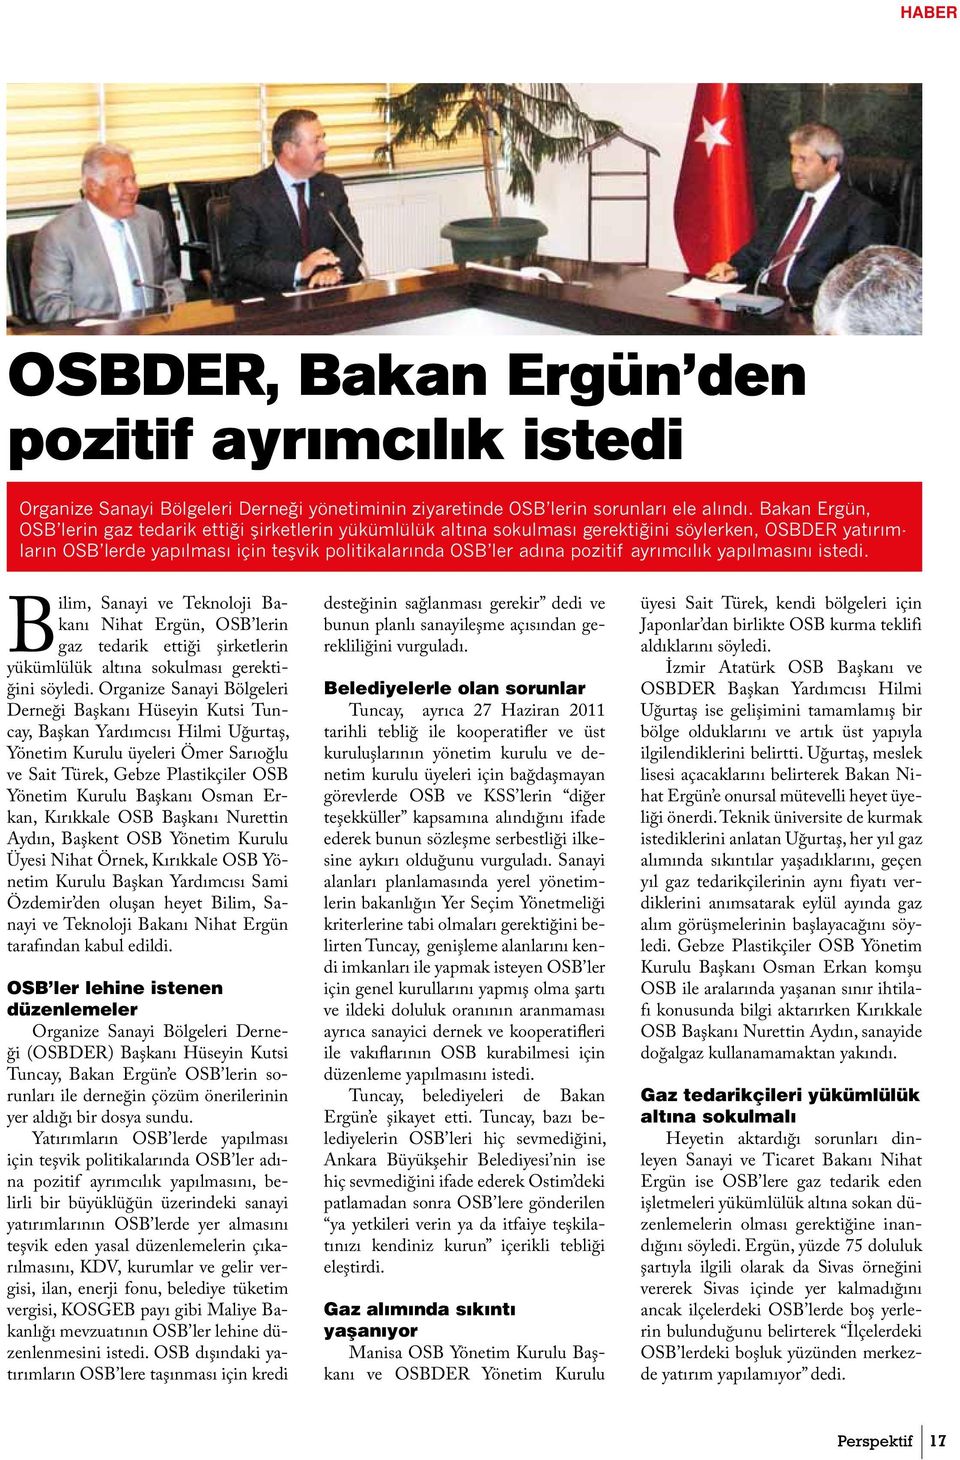 ayrımcılık yapılmasını istedi. Bilim, Sanayi ve Teknoloji Bakanı Nihat Ergün, OSB lerin gaz tedarik ettiği şirketlerin yükümlülük altına sokulması gerektiğini söyledi.